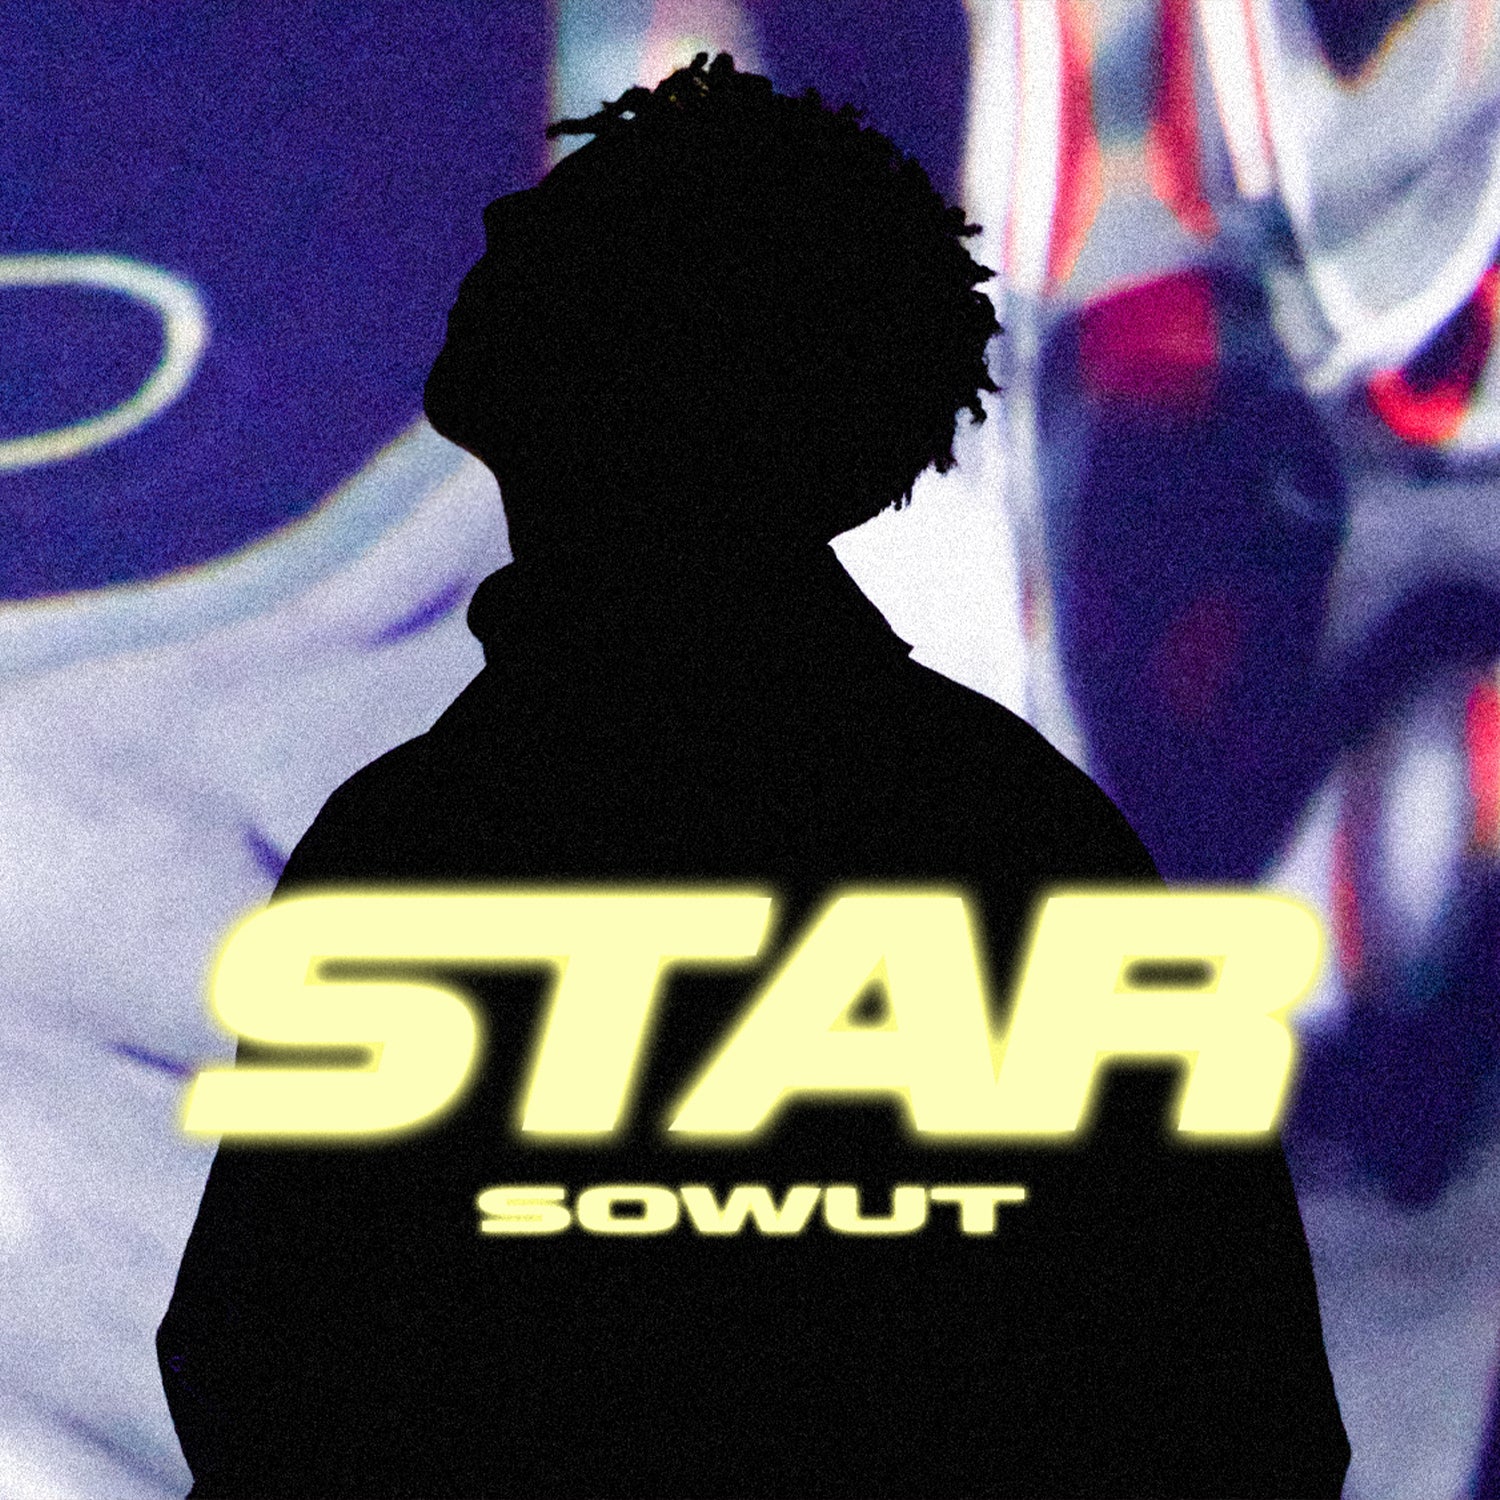 SOWUT "STAR" Official MV / Single